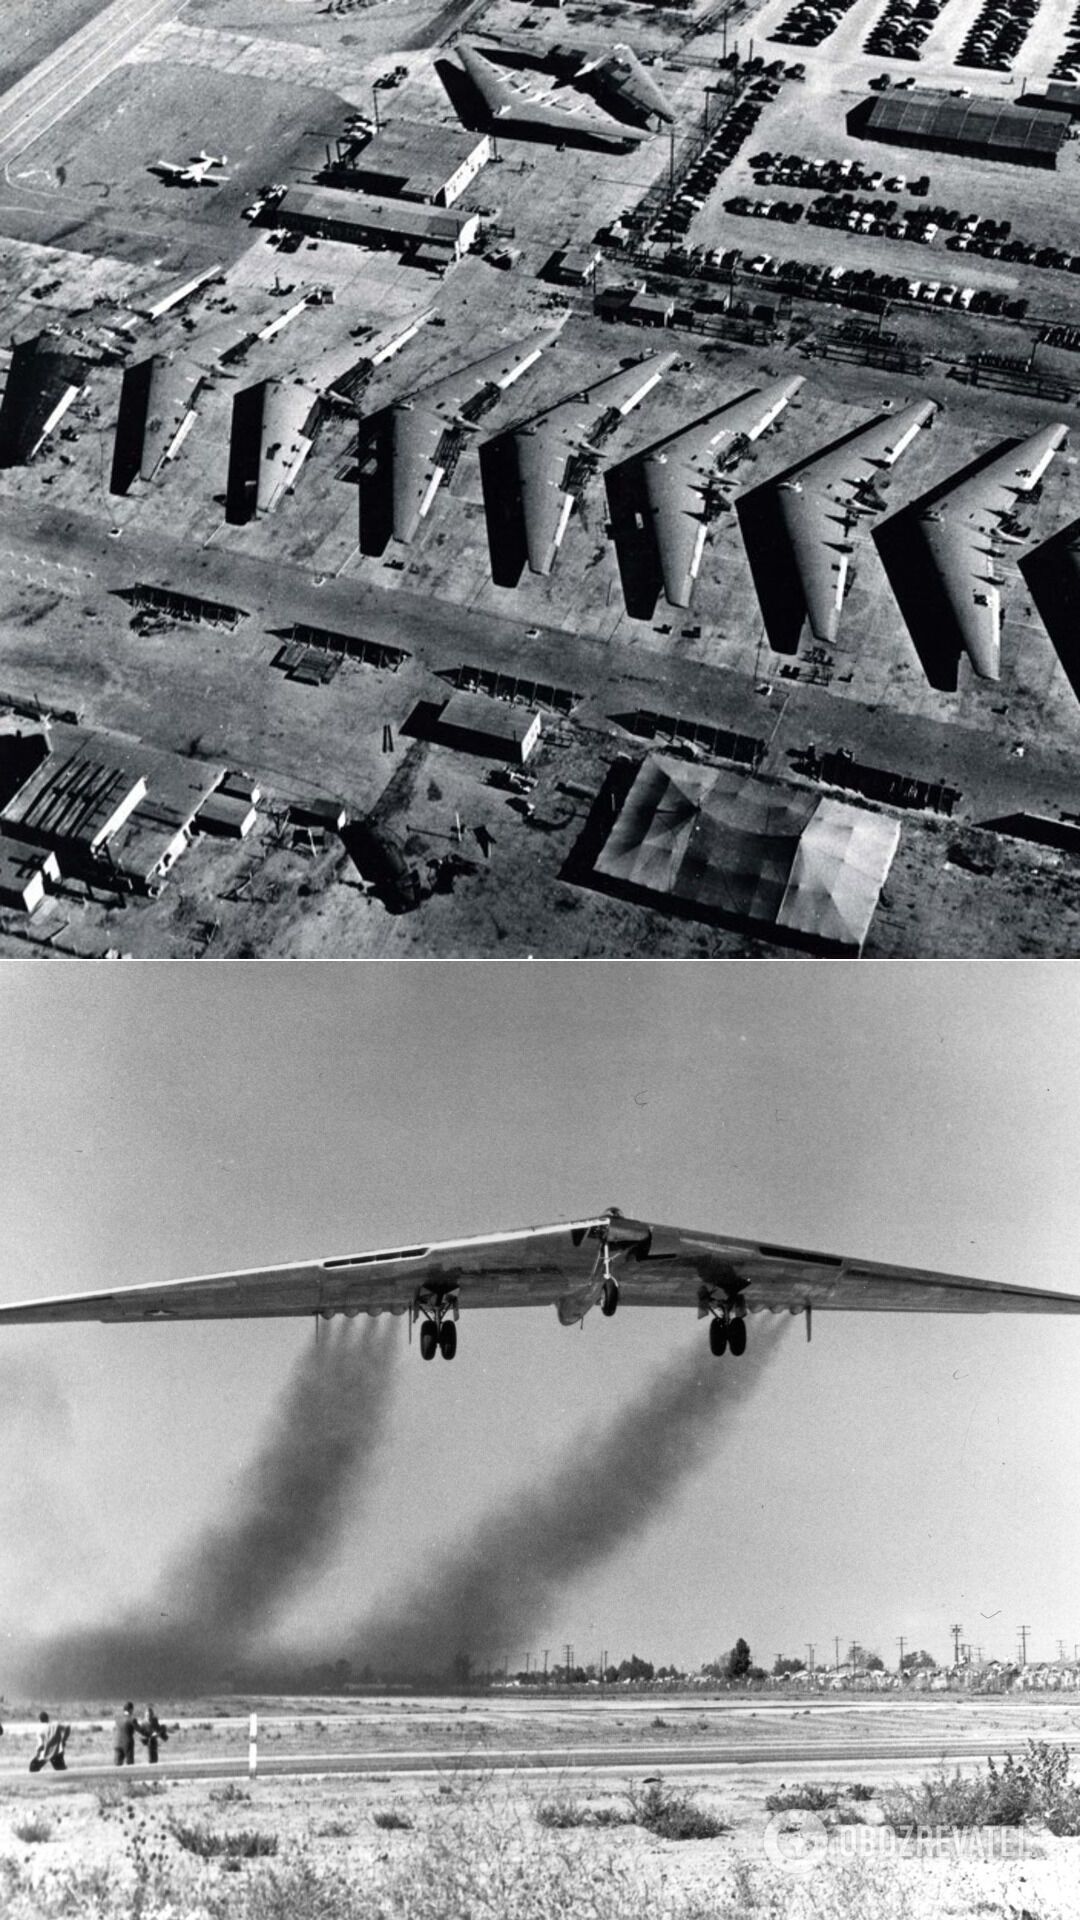 Northrop YB-49 – прототип тяжелого бомбардировщика с реактивным двигателем, разработанного корпорацией Northrop вскоре после Второй мировой войны для обслуживания ВВС США